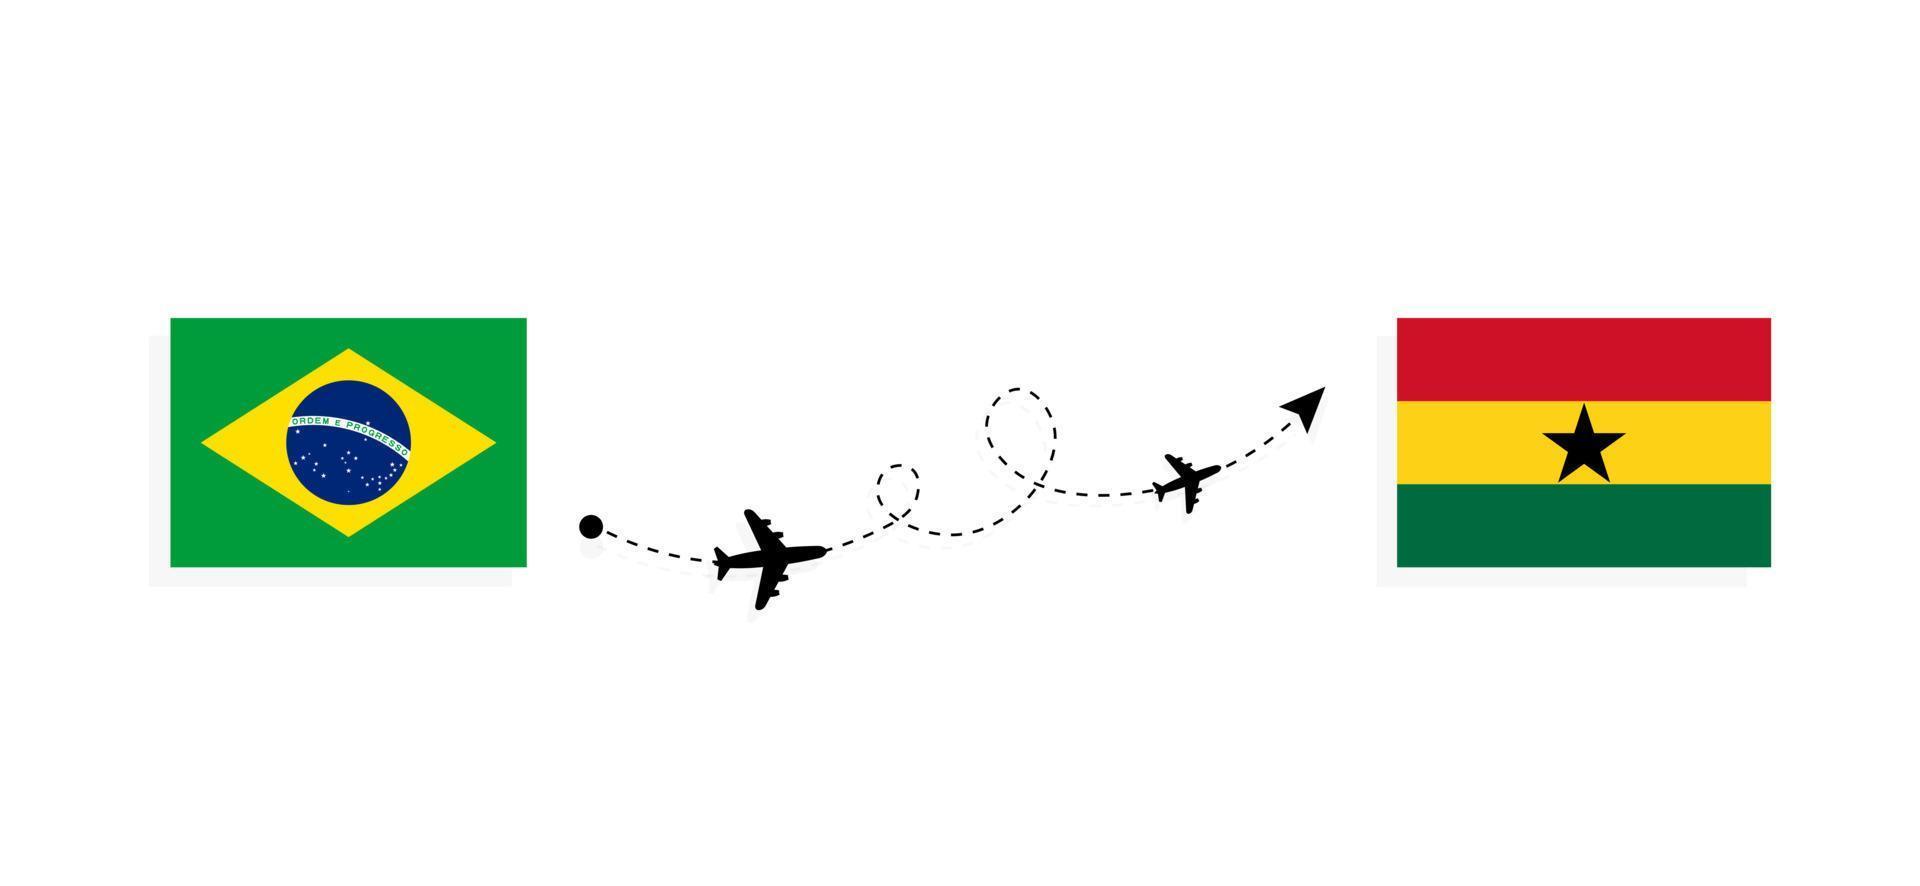 vol et voyage du brésil au ghana par concept de voyage en avion de passagers vecteur